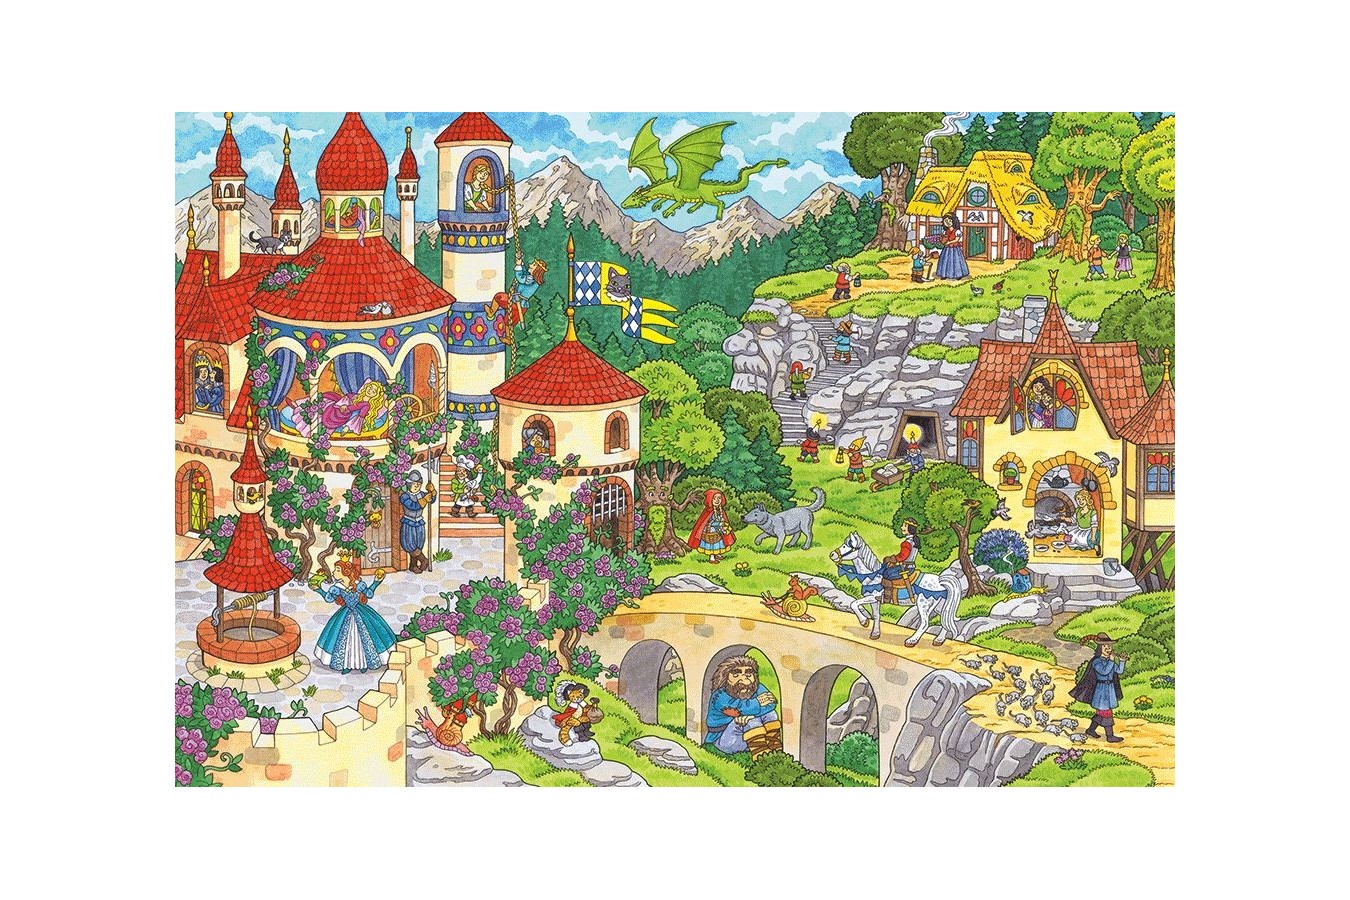 Puzzle Schmidt - A Fairytale Kingdom, 100 piese (56311)